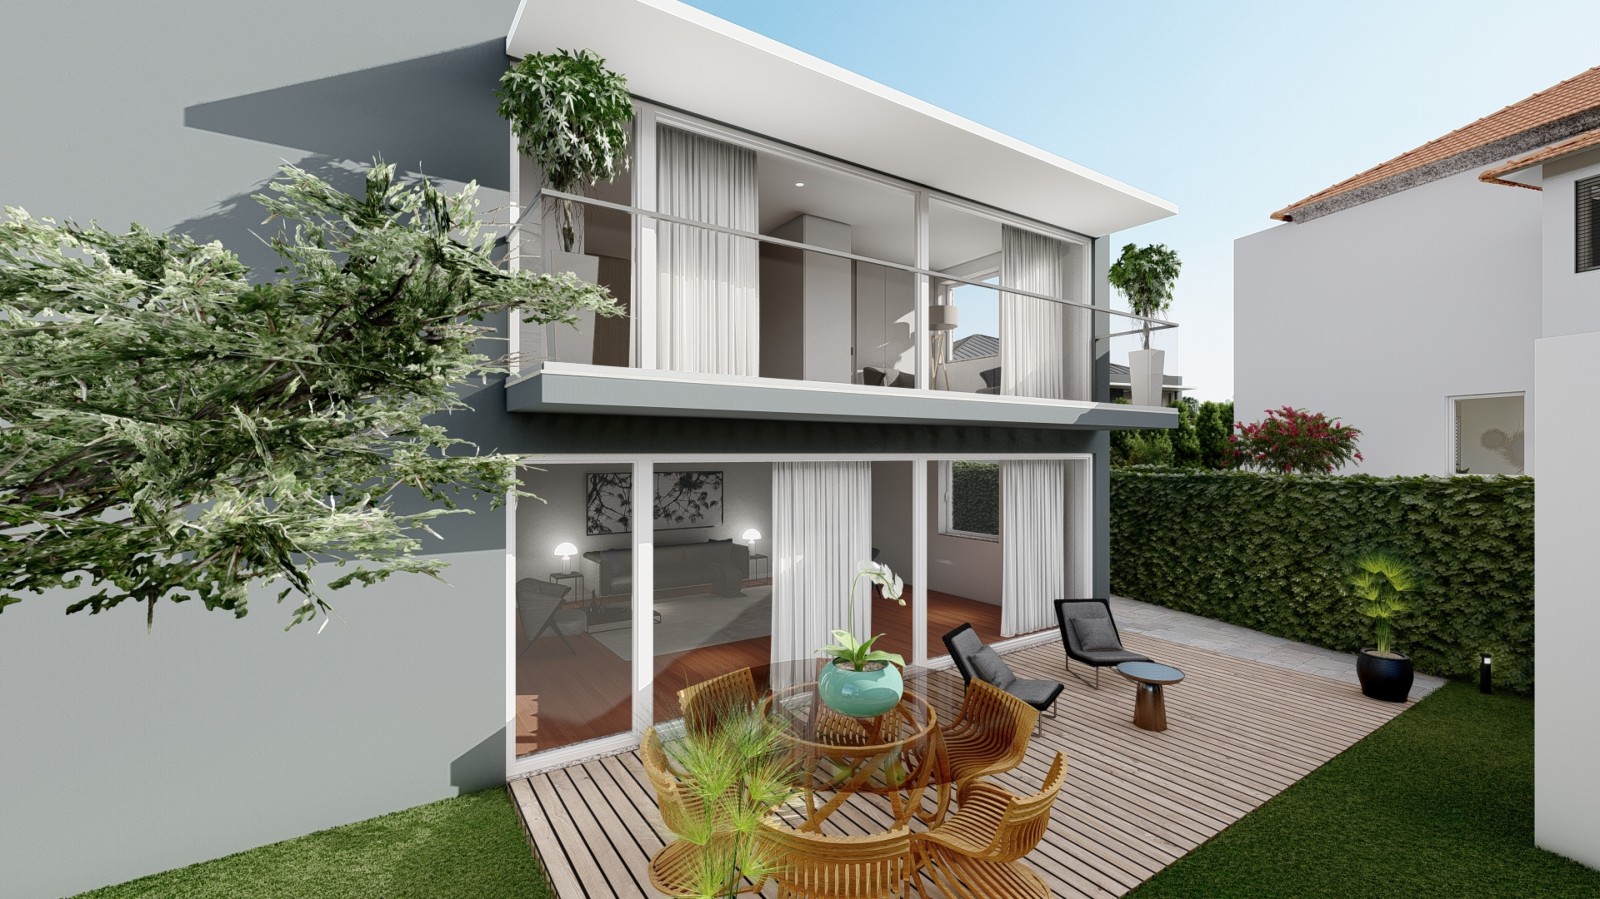 new-luxury-villa-with-garden-for-sale-in-leca-da-palmeira-porto-portugal